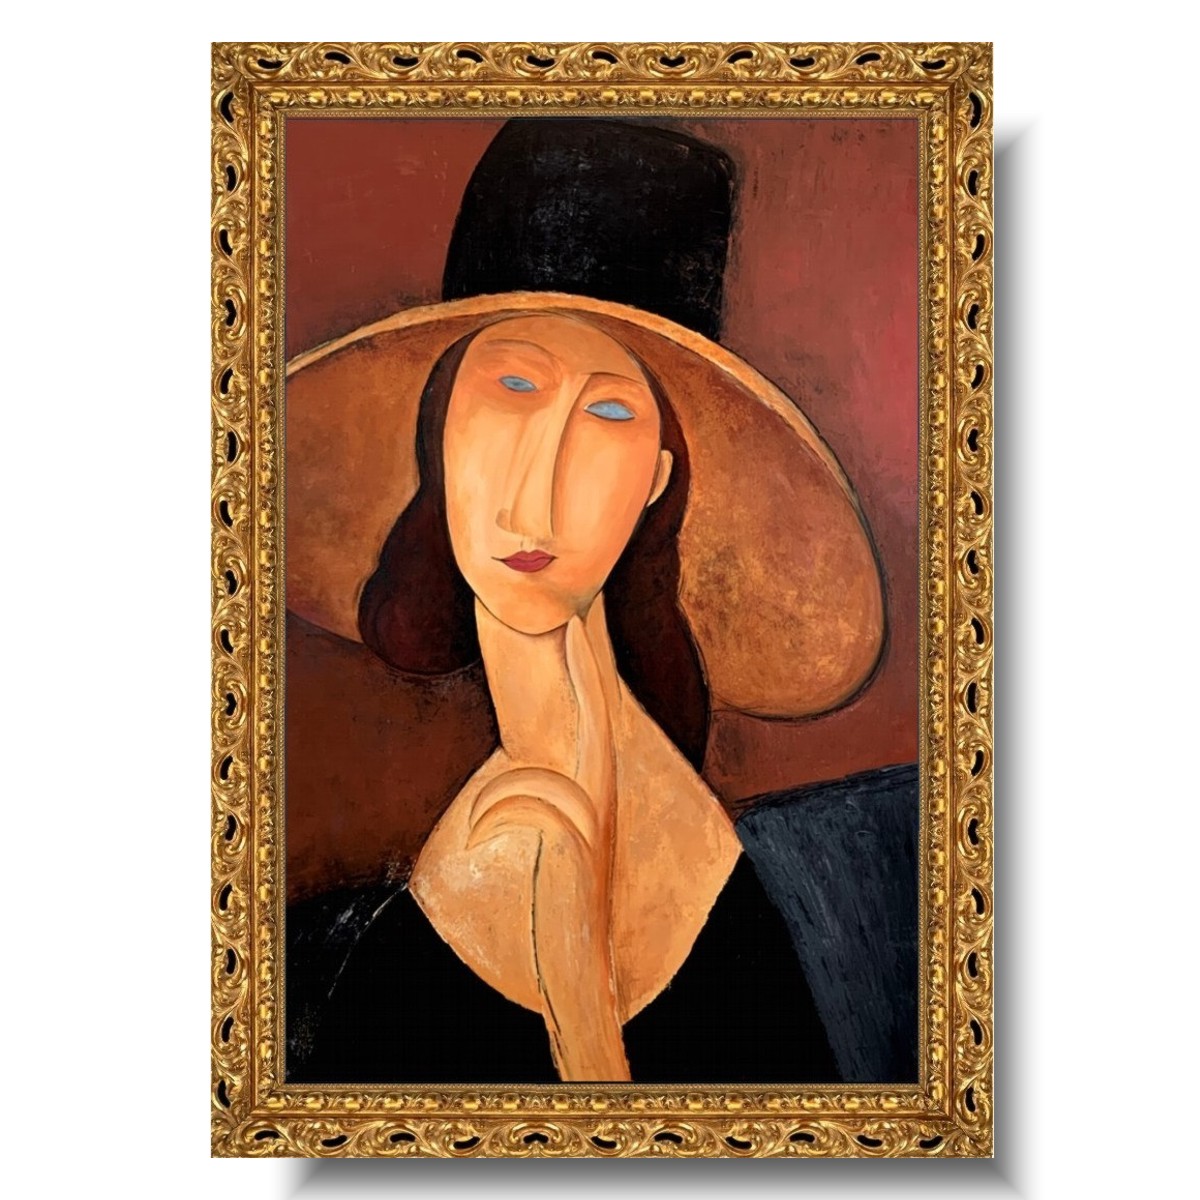 Obraz portret kobieta w kapeluszu, Portret kobiety w kapeluszu, reprodukcja Modigliani, portrety na zamówienie, obrazy sławnych malarzy